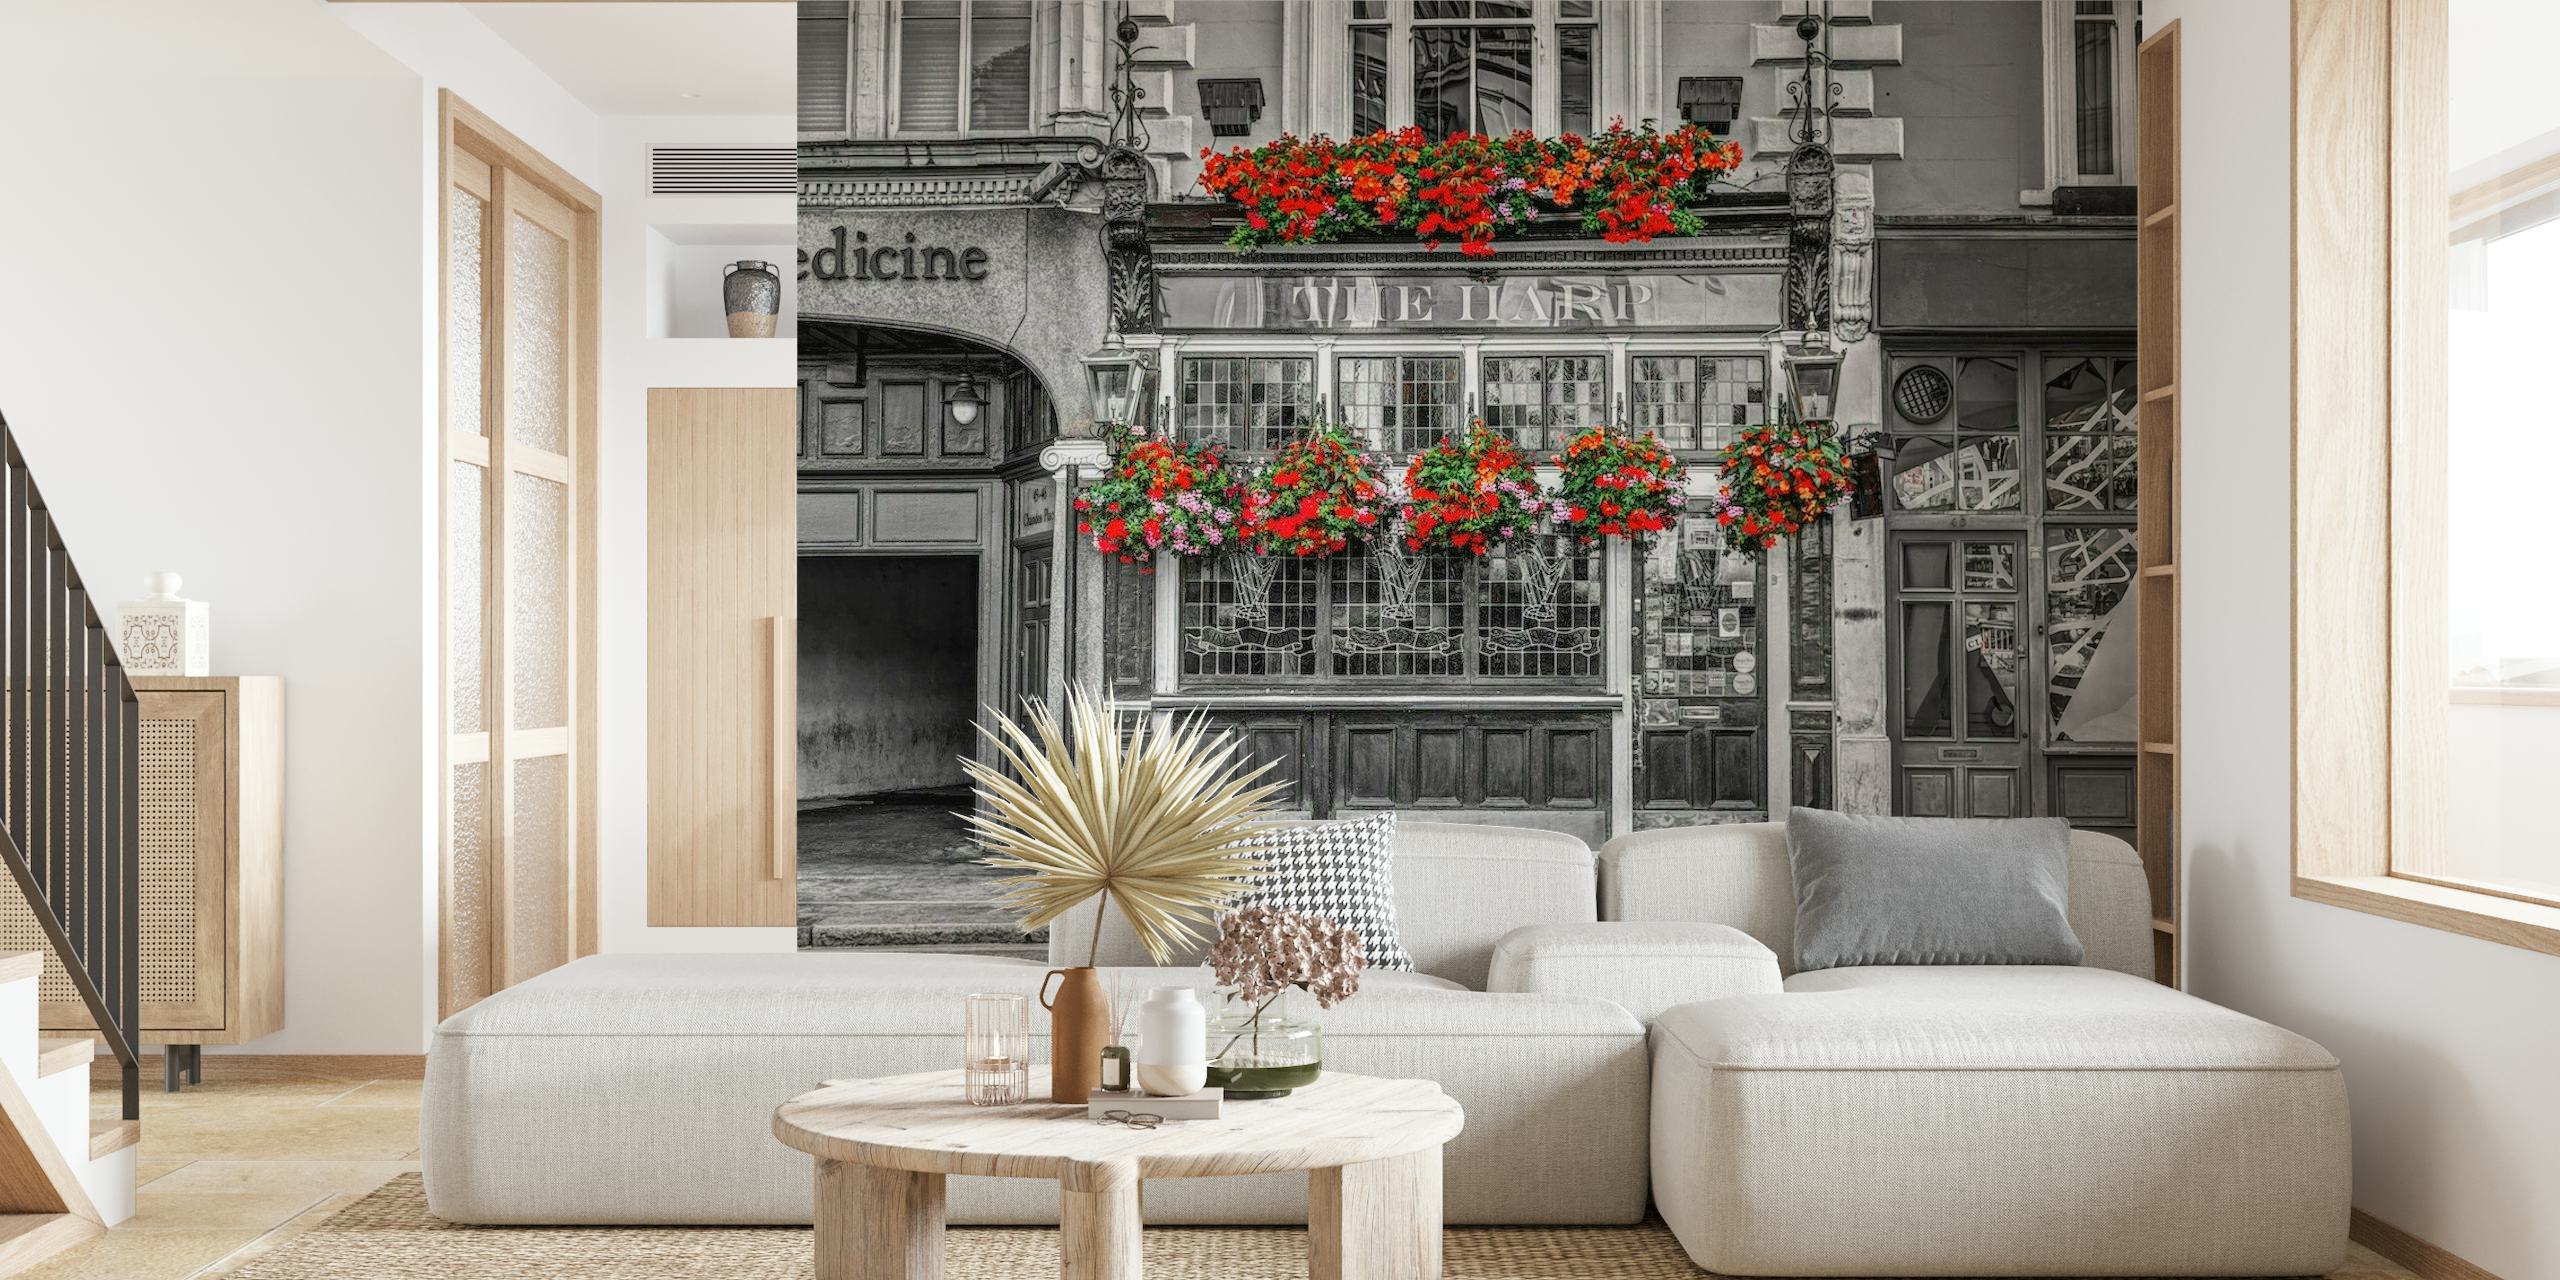 Klasyczna czarno-biała fasada brytyjskiego pubu z żywymi czerwonymi kwiatami, fototapeta